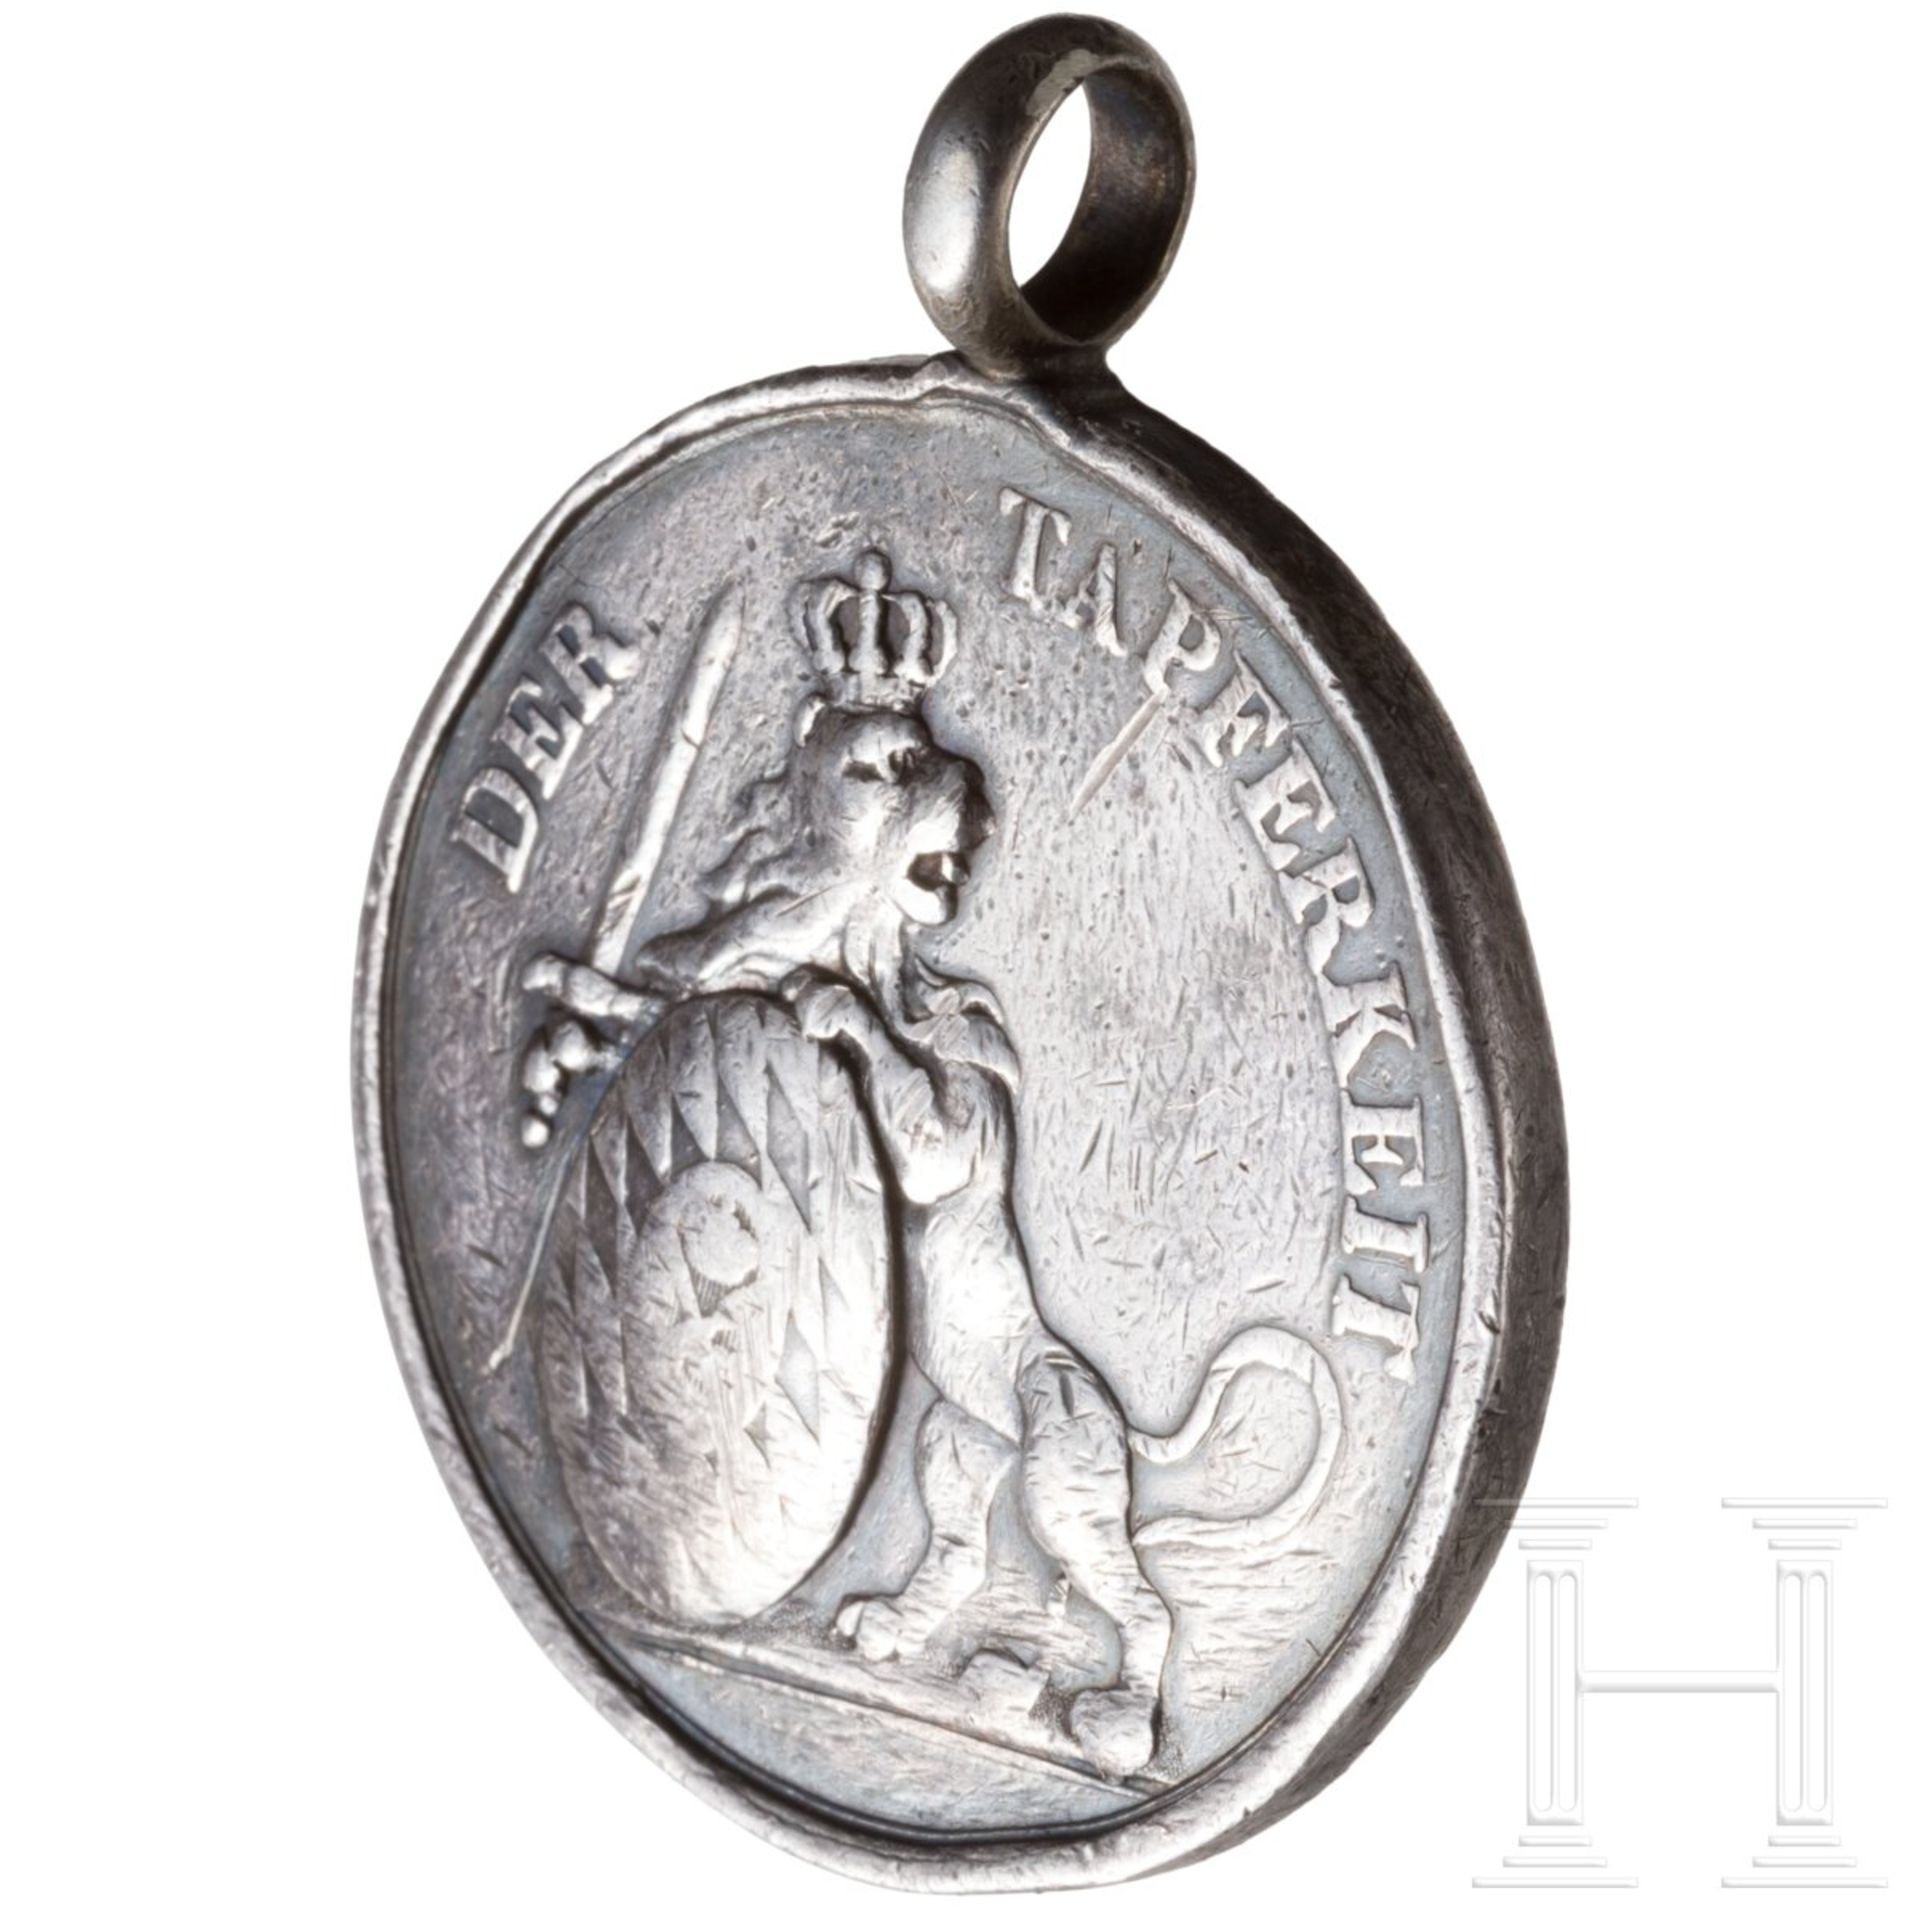 Bayerische Silberne Militär-Verdienst-Medaille oder "Tapferkeitsmedaille" - Image 3 of 3